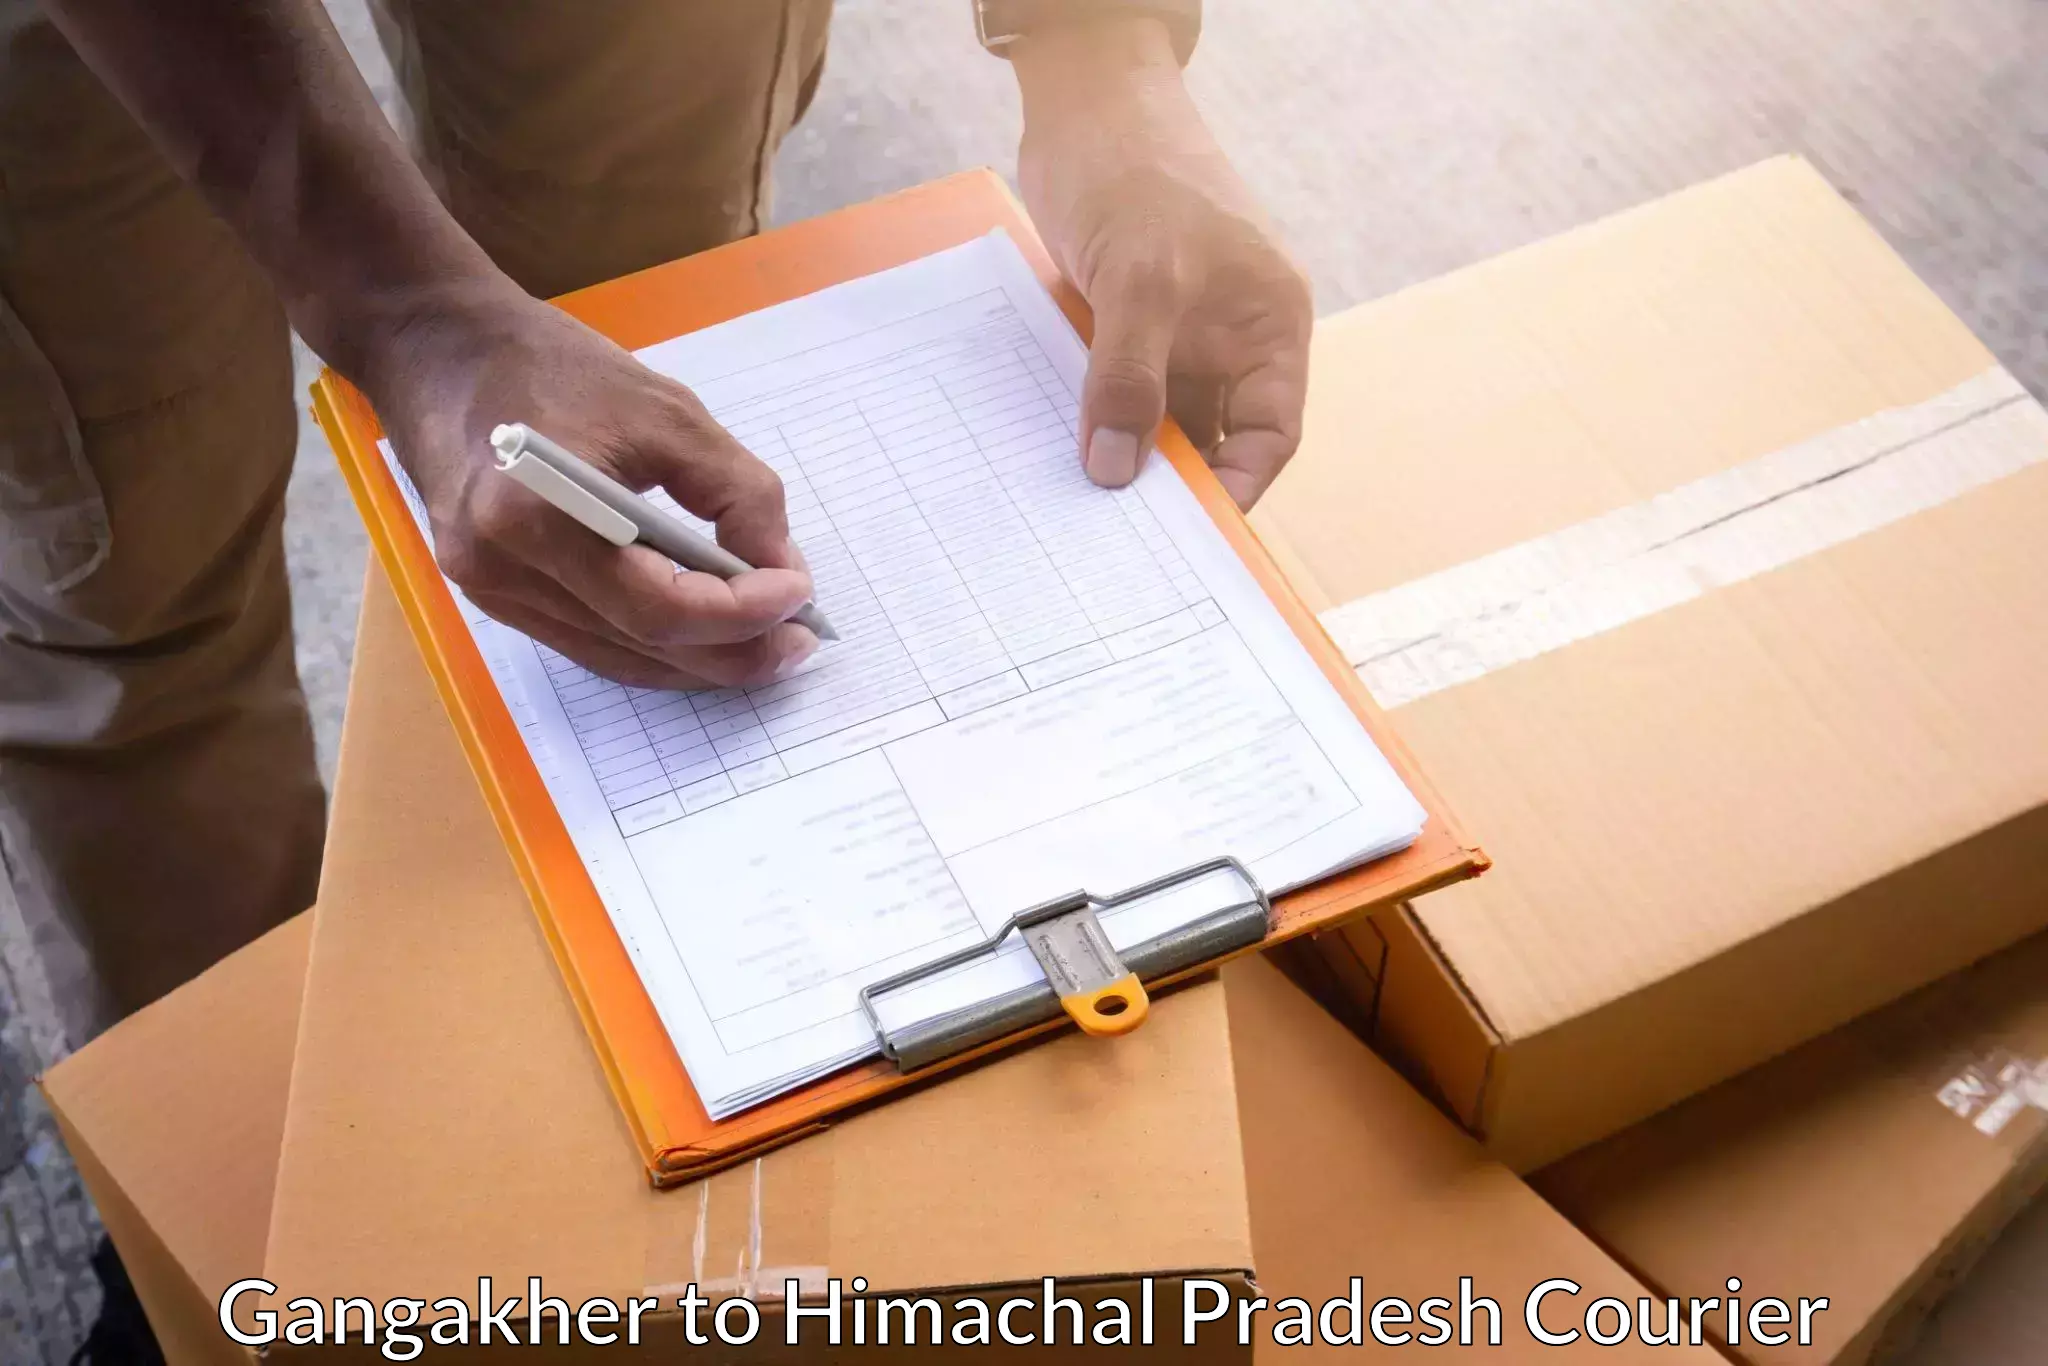 Multi-service courier options Gangakher to Sundla